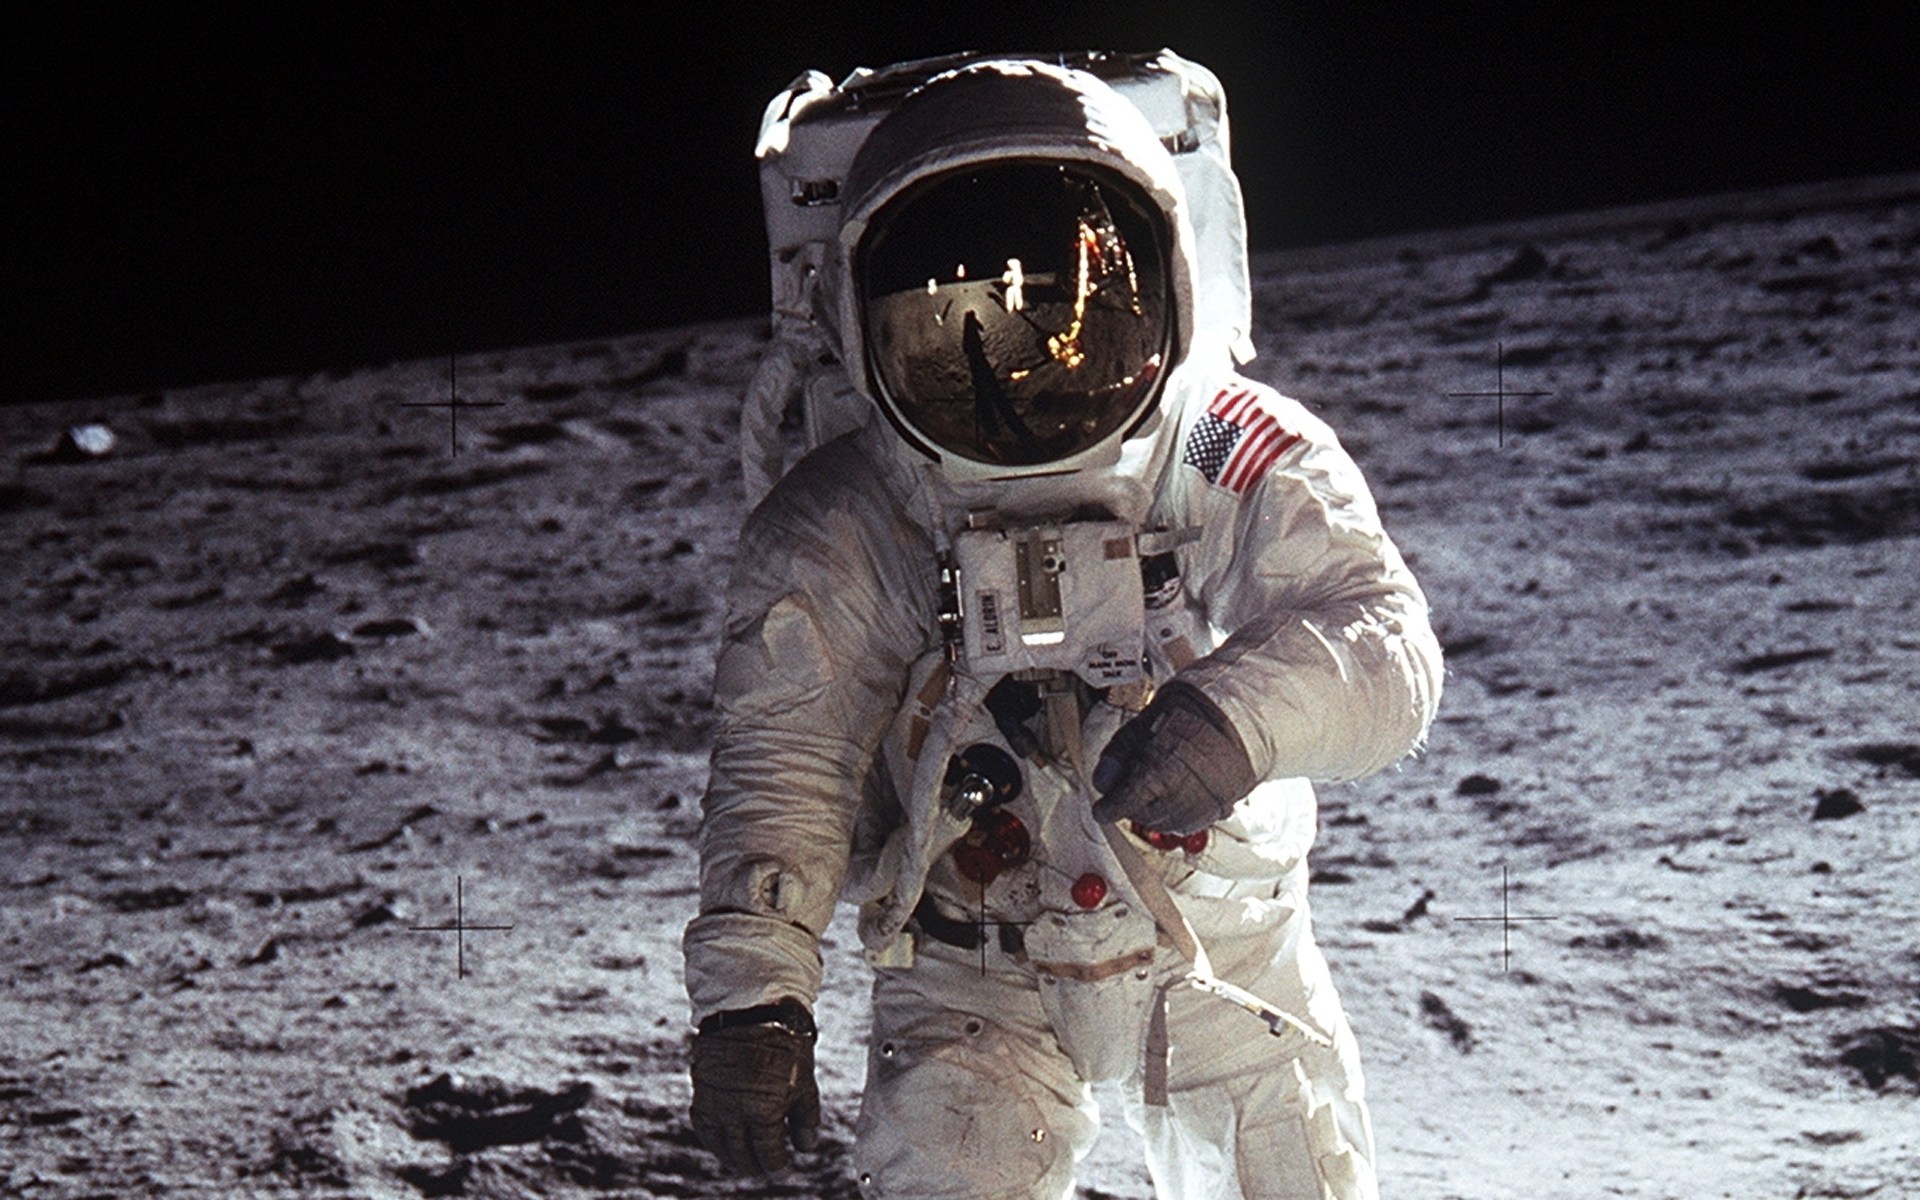 Скачать обои Аполлон 11 на телефон бесплатно